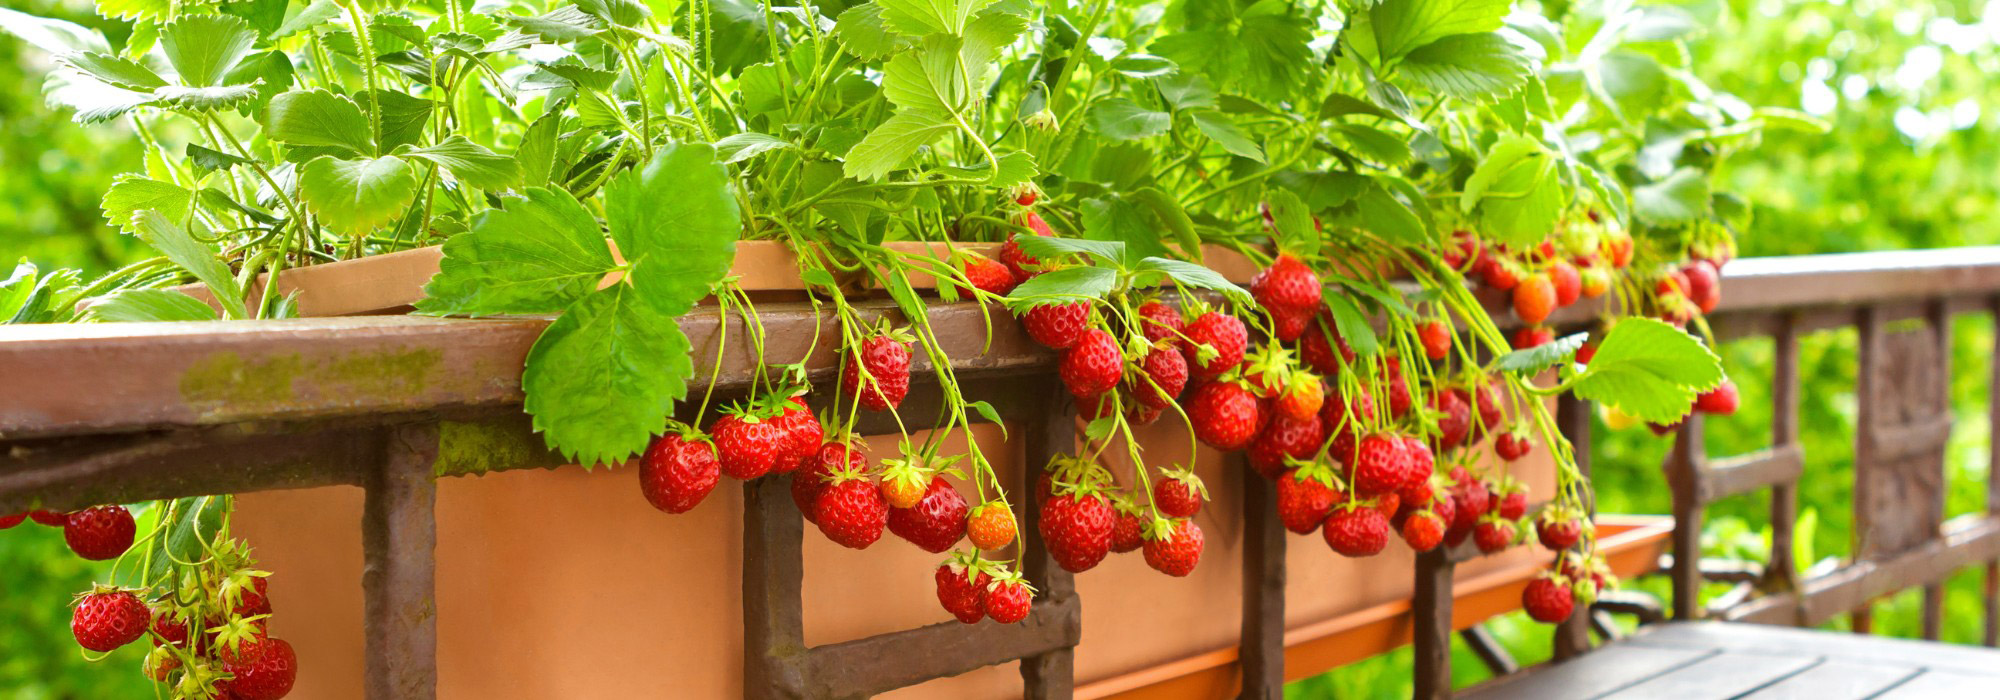 Les meilleures idées gain de place pour cultiver des fraises